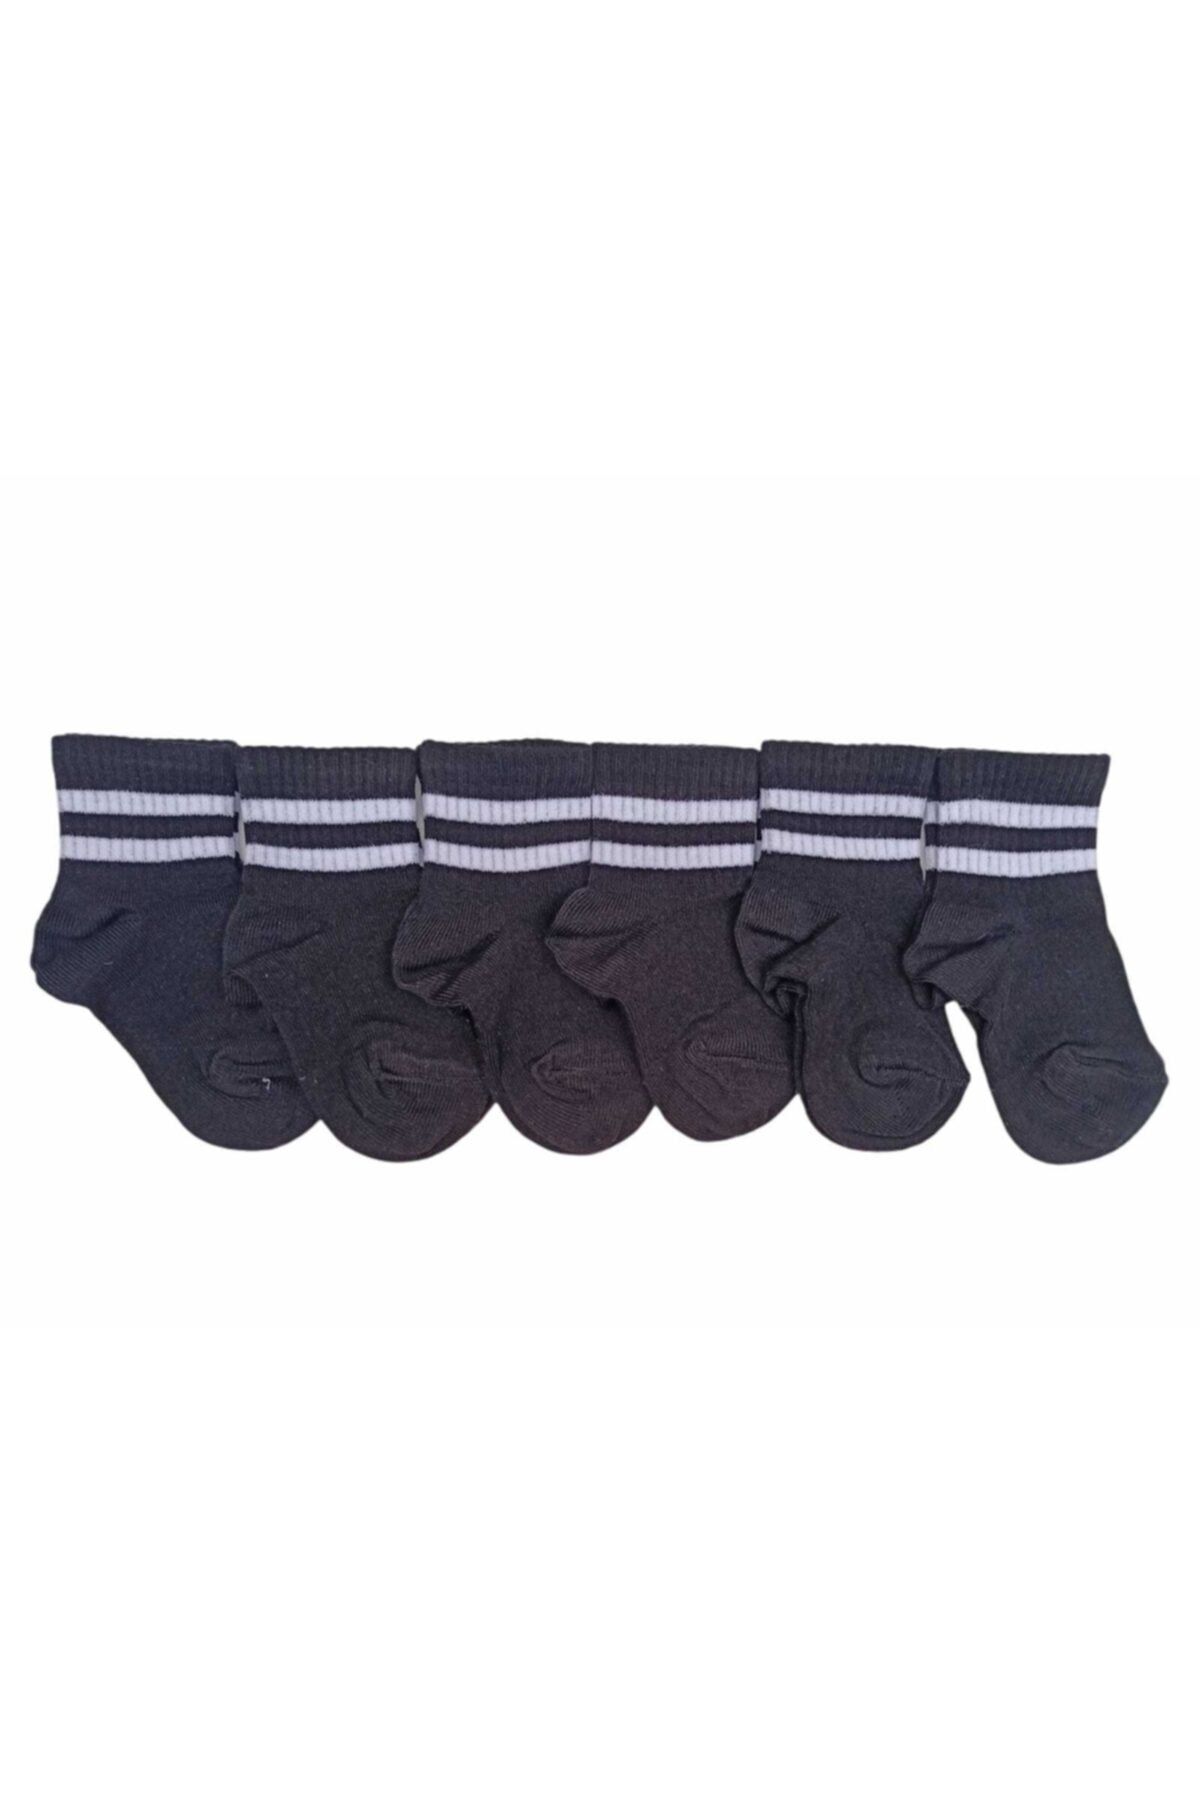 Design Socks Unisex Bebek Siyah Renkli Çizgili Patik Çorap 6'lı